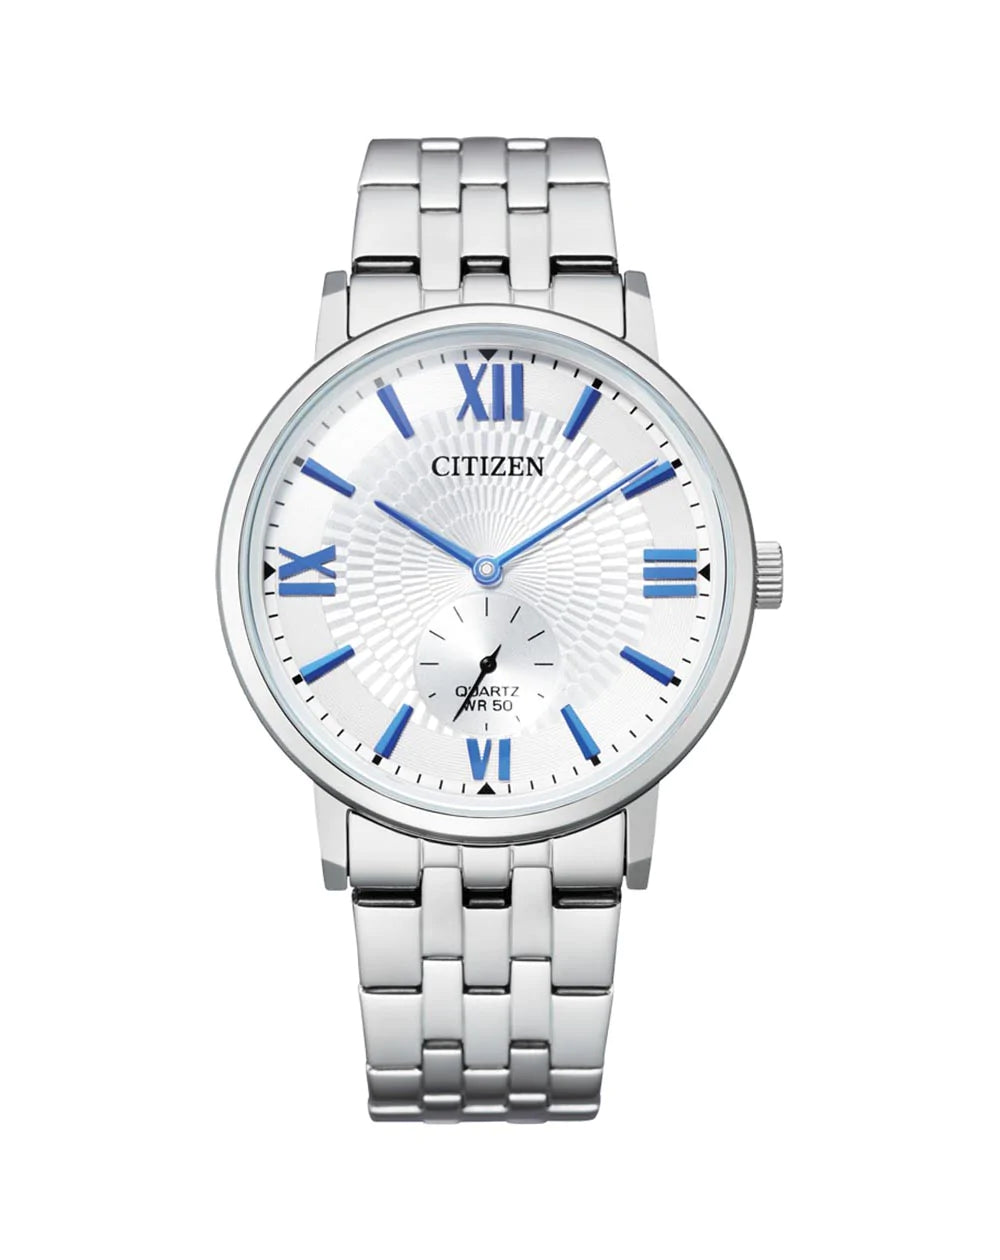 Gents Citizen Quartz Watch with Blue Roman Numerals